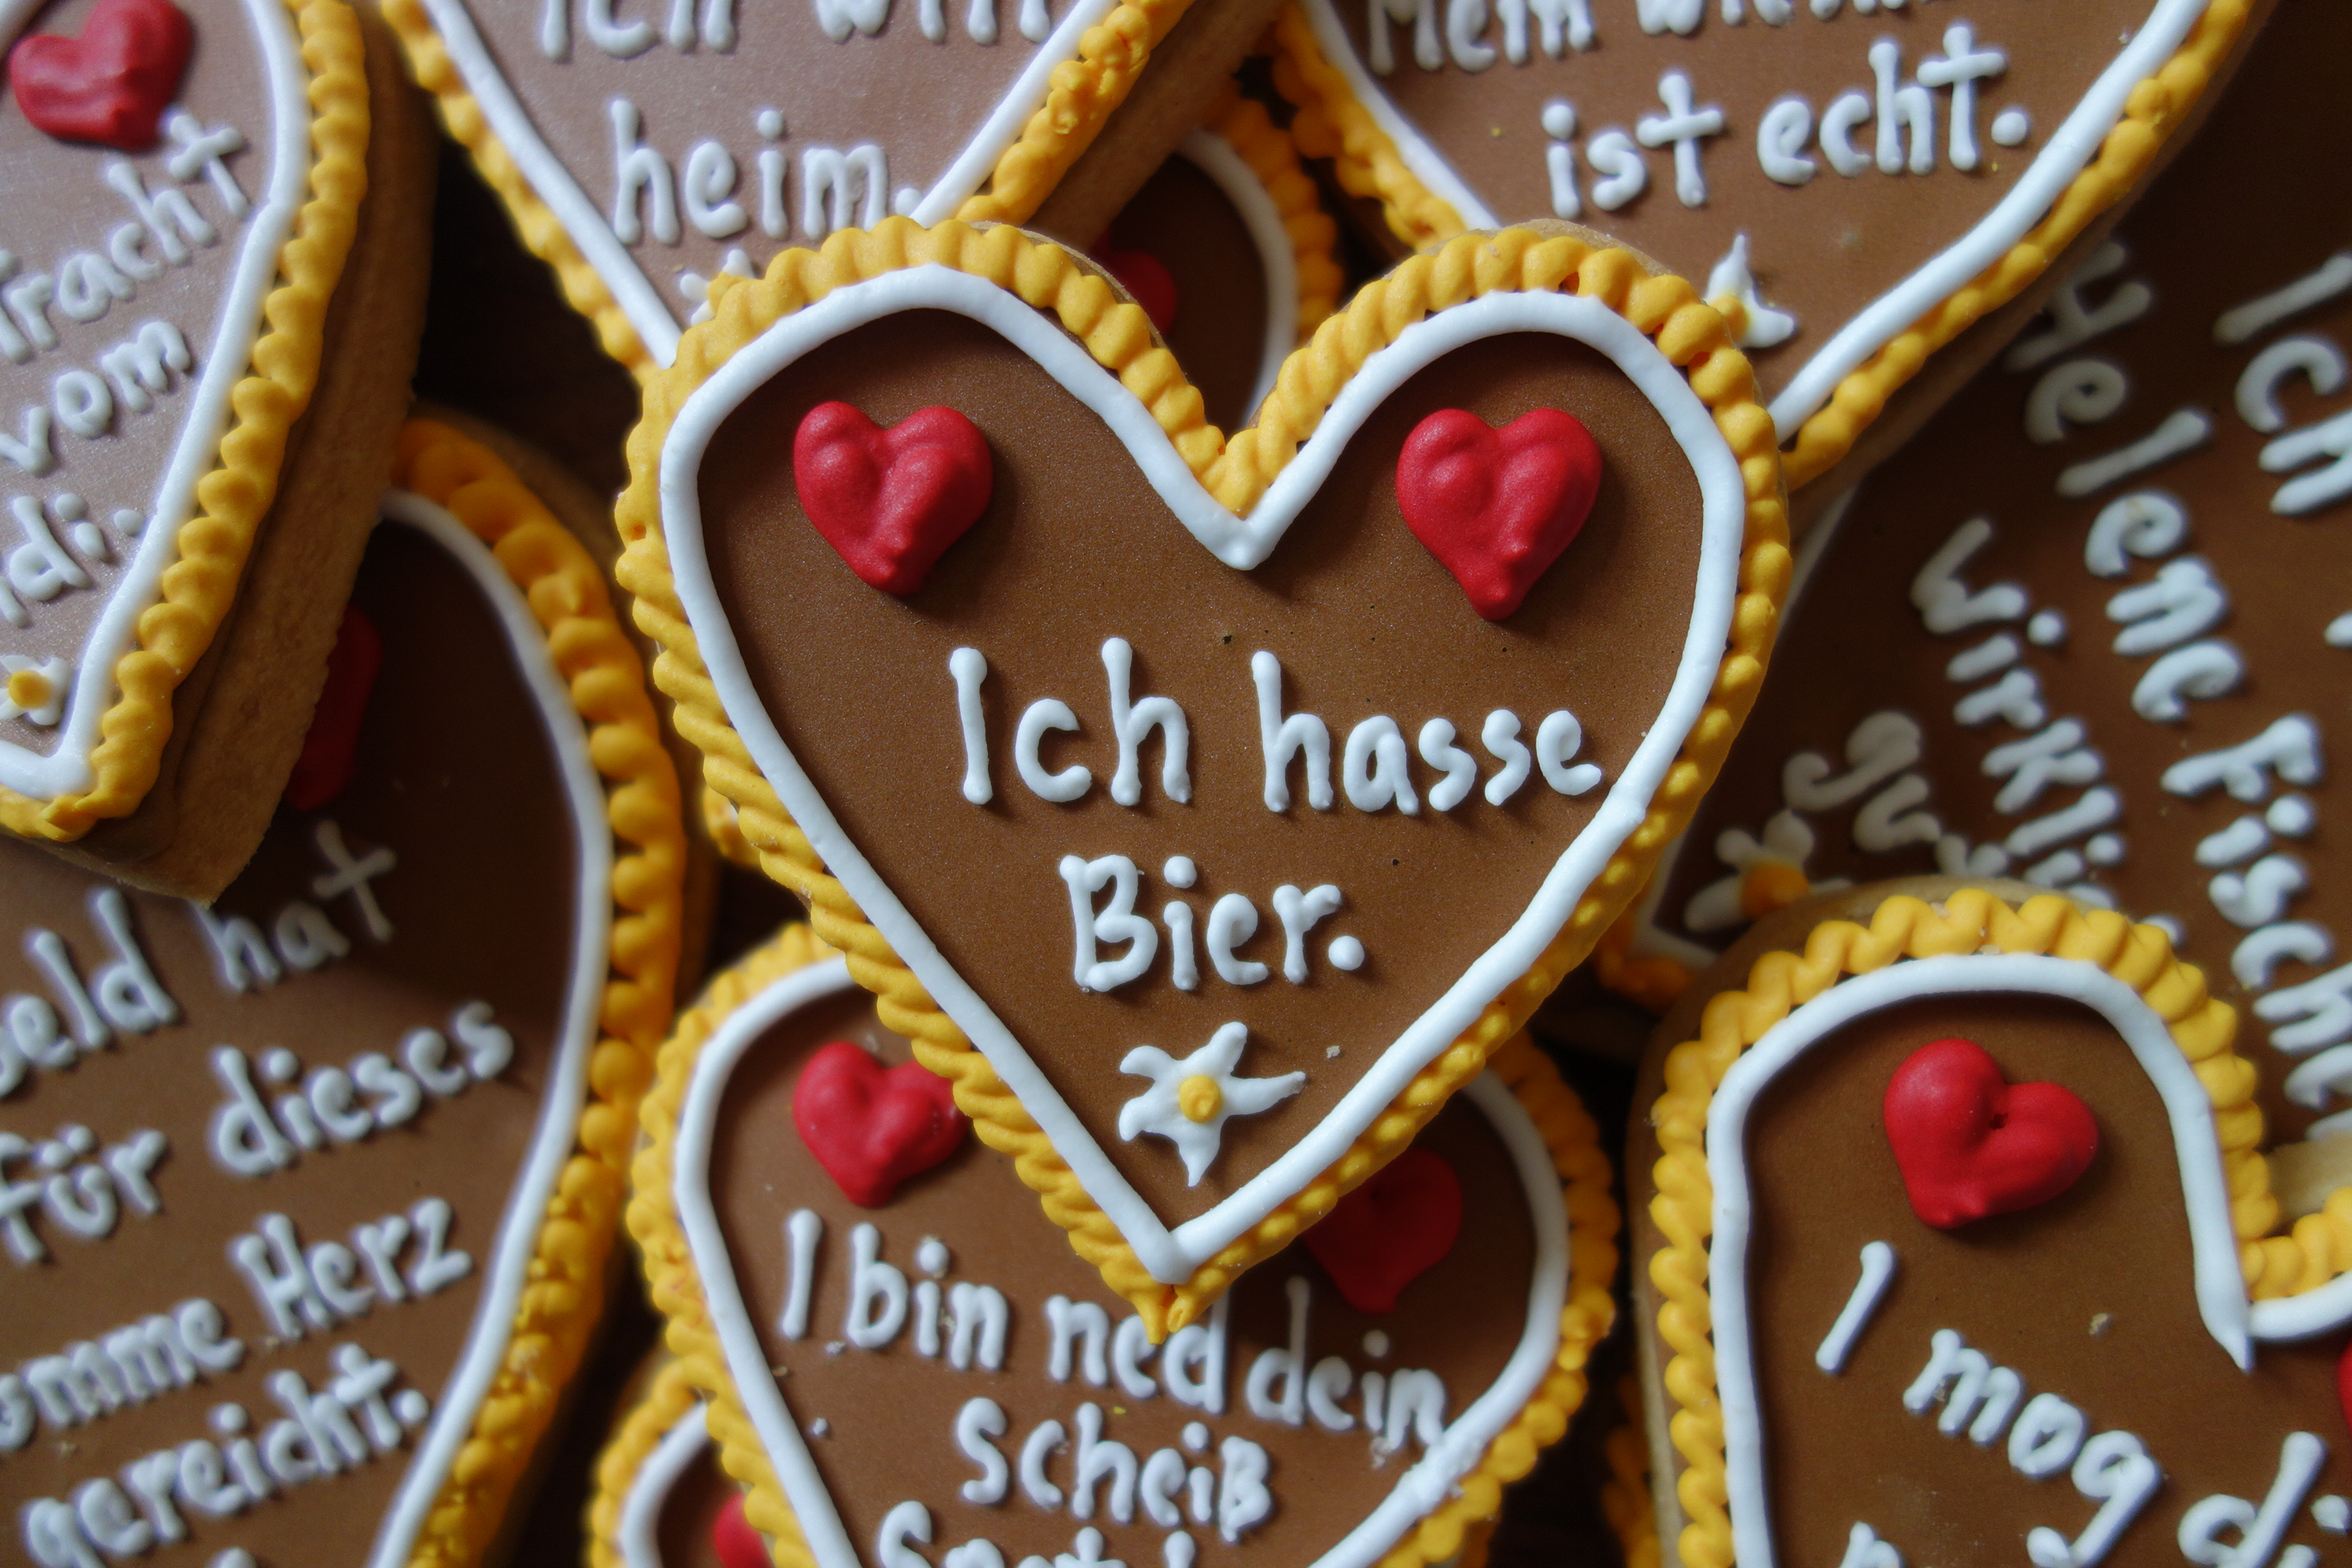 49+ Sprueche die es in sich haben , 11 ehrliche Sprüche fürs Lebkuchenherz Mit Vergnügen München